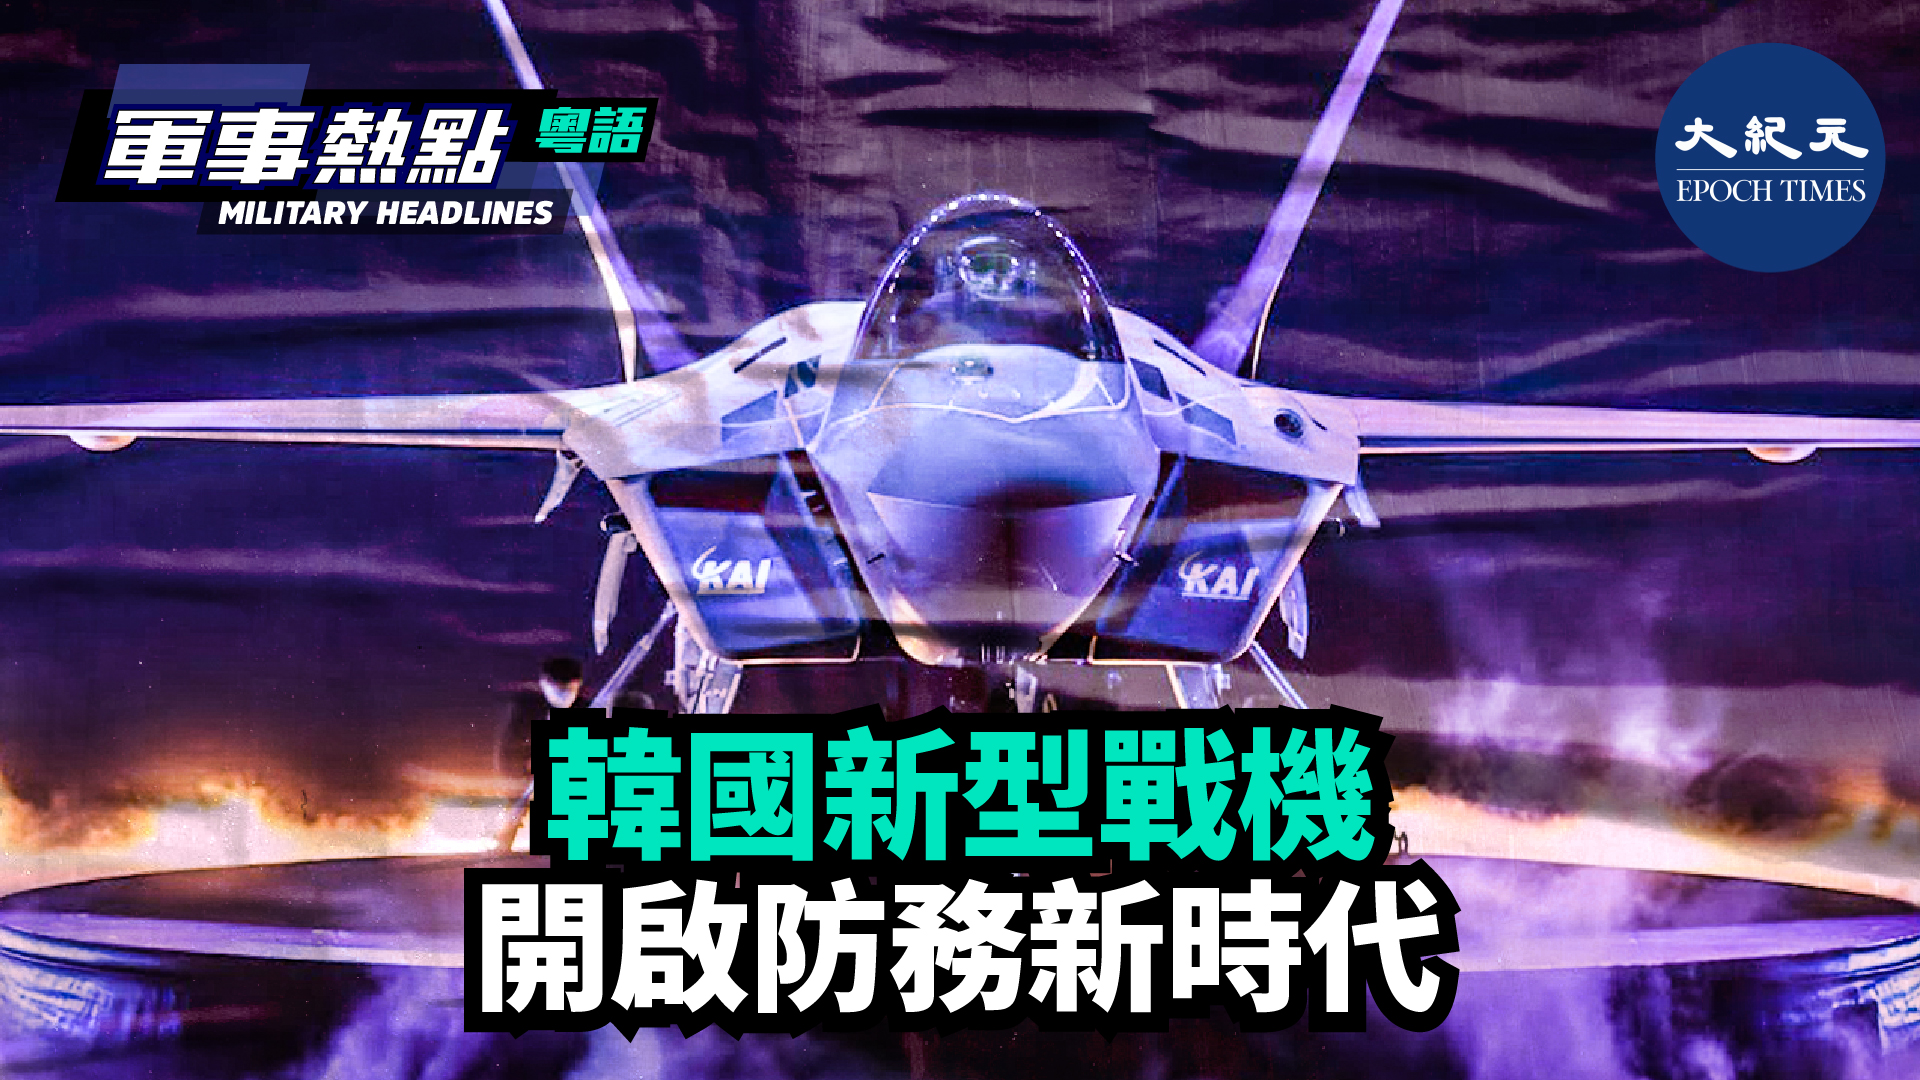 【軍事熱點】(粵語) 新型四代半戰機將讓韓國擁有一項值得自豪的國防裝備，不僅提升韓國的武器自主能力，甚至提升韓國的主權地位。